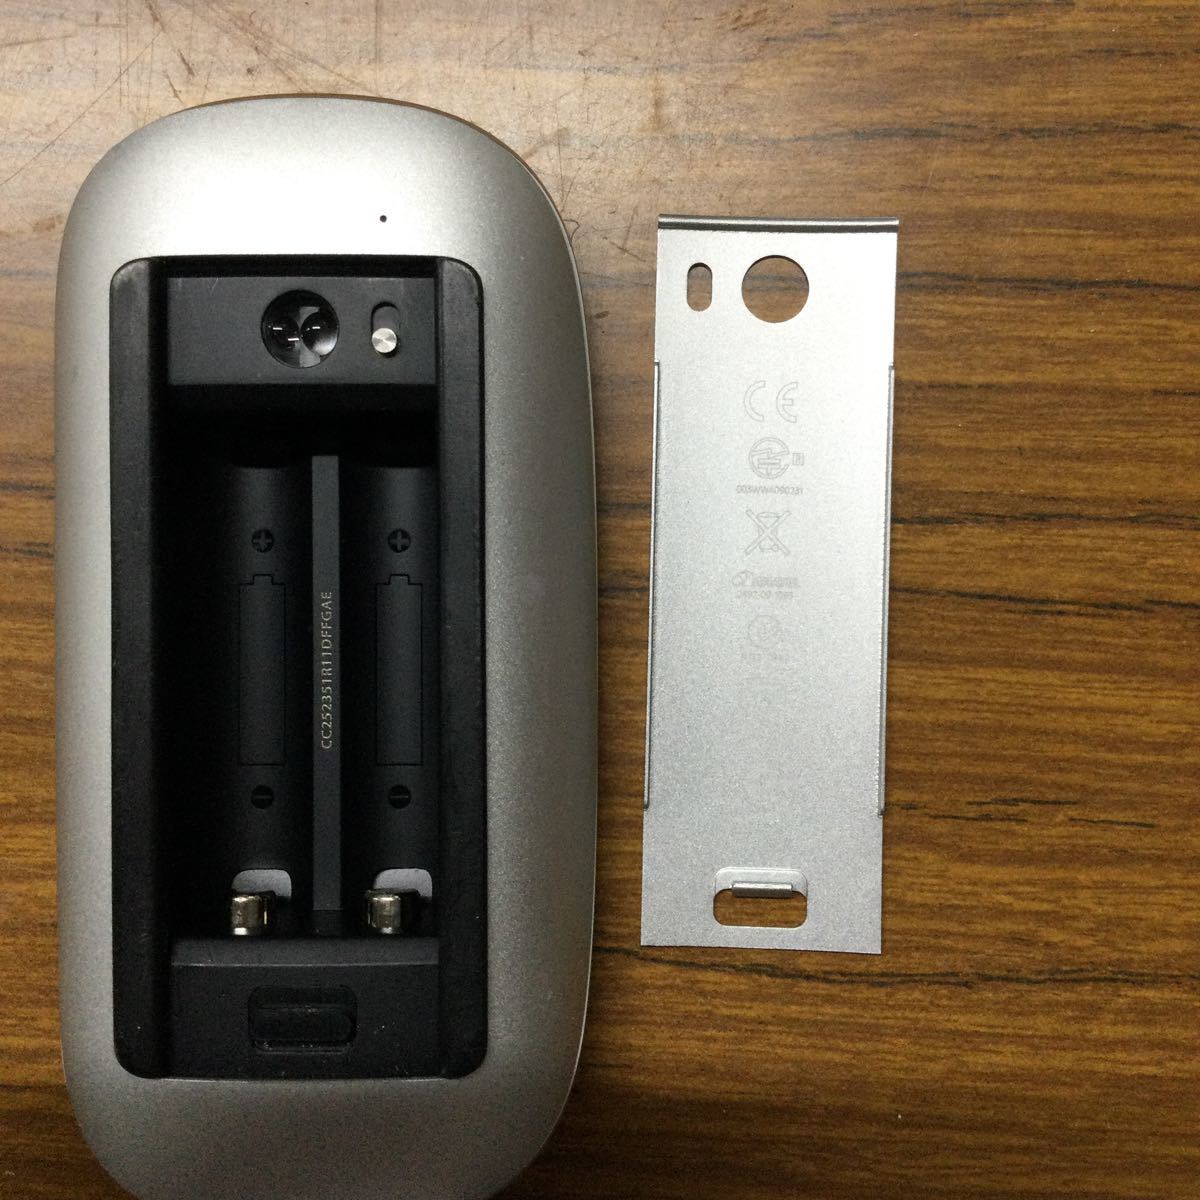 USED★Apple アップル A1296 3Vdc Magic Mouse マジックマウス Wireless ワイヤレス Bluetooth 無線 電池式 動作確認済★2_画像4